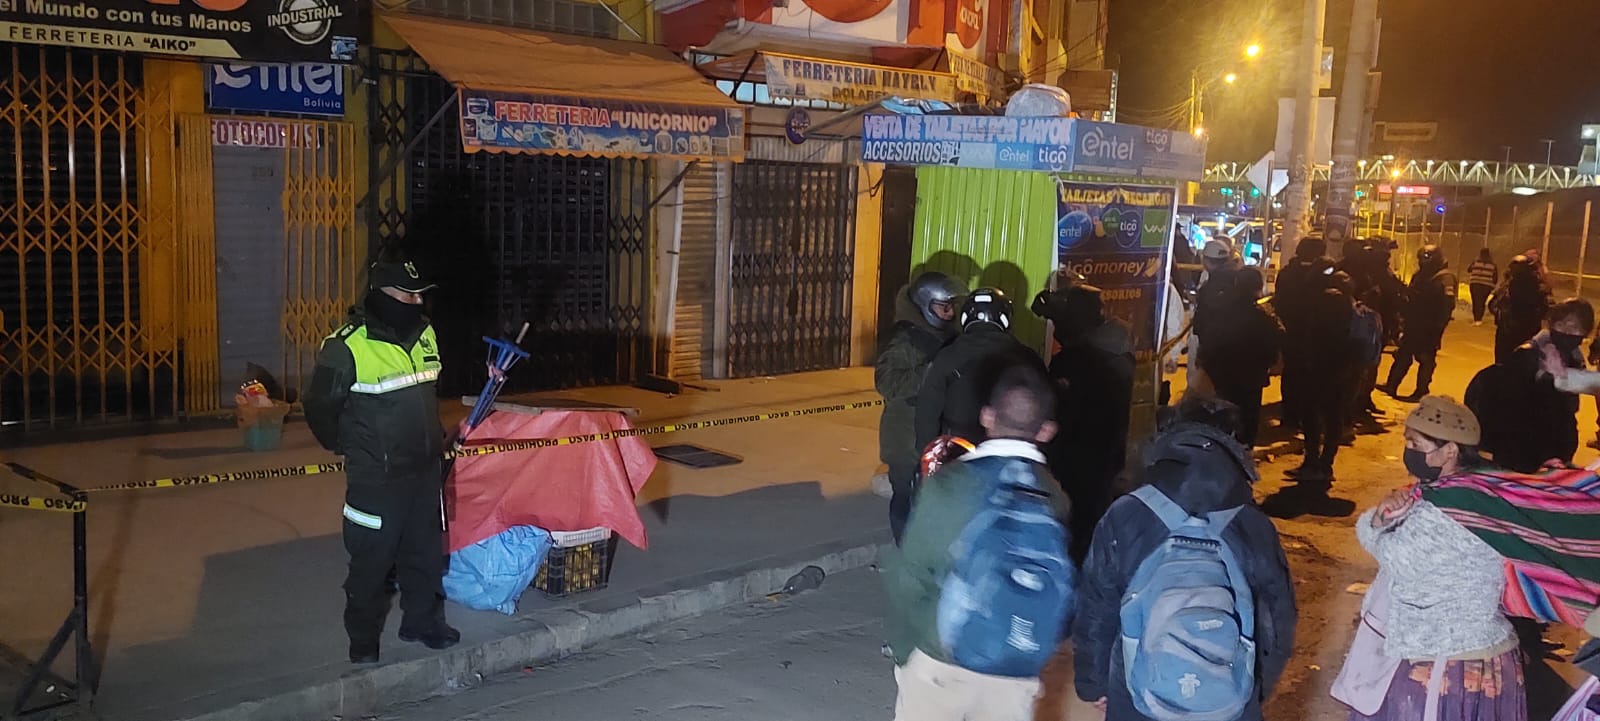 Delincuentes armados robaron al menos $us 10.000 en negocios de El Alto